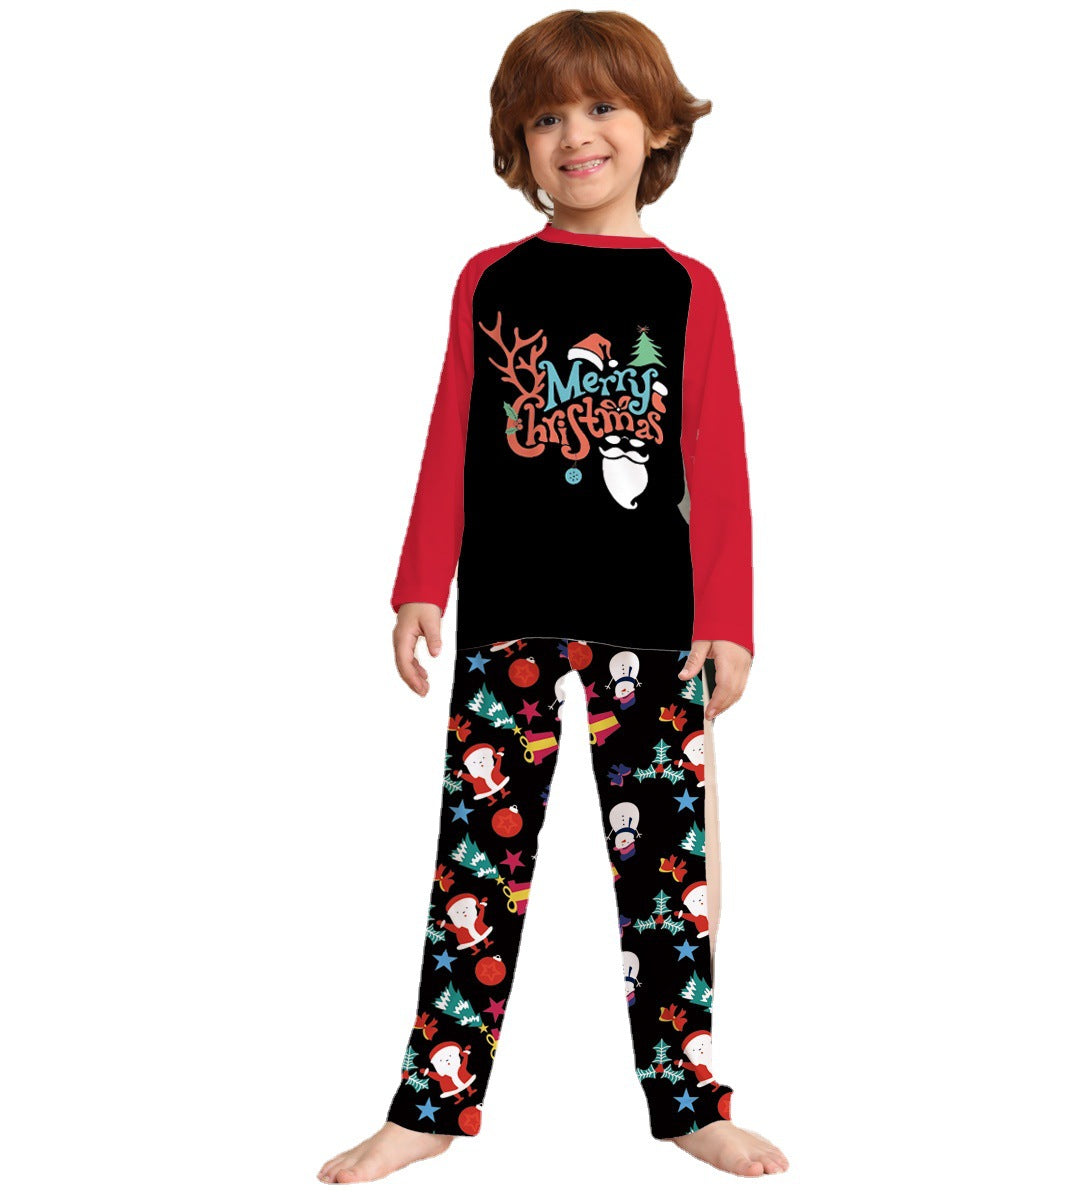 Family Christmas Parent-child Cartoon Printed Holiday Pajamas